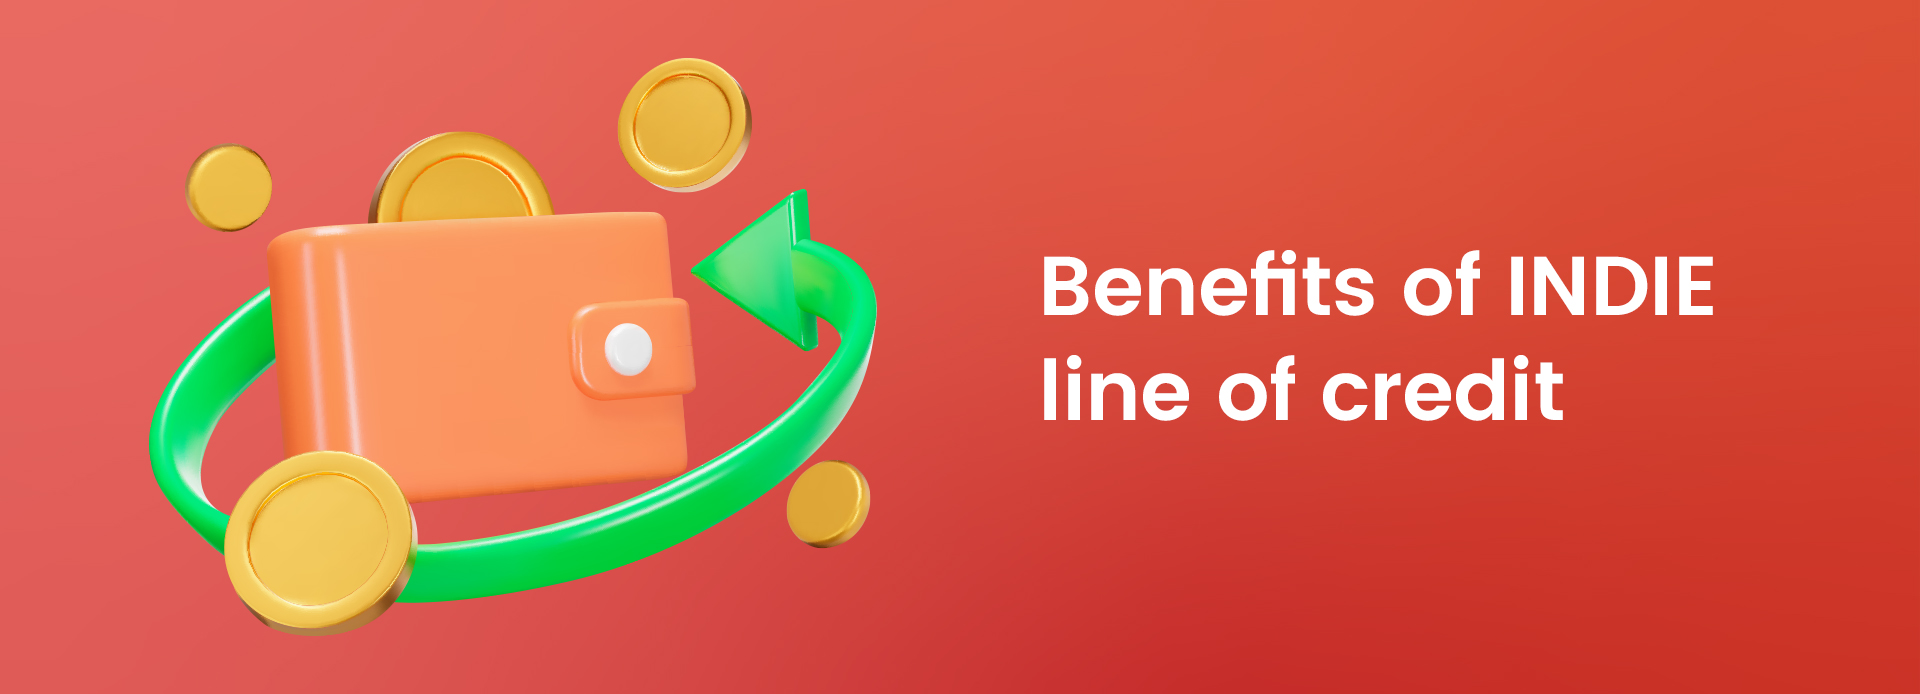 Understanding the benefits of INDIE’s line of credit 